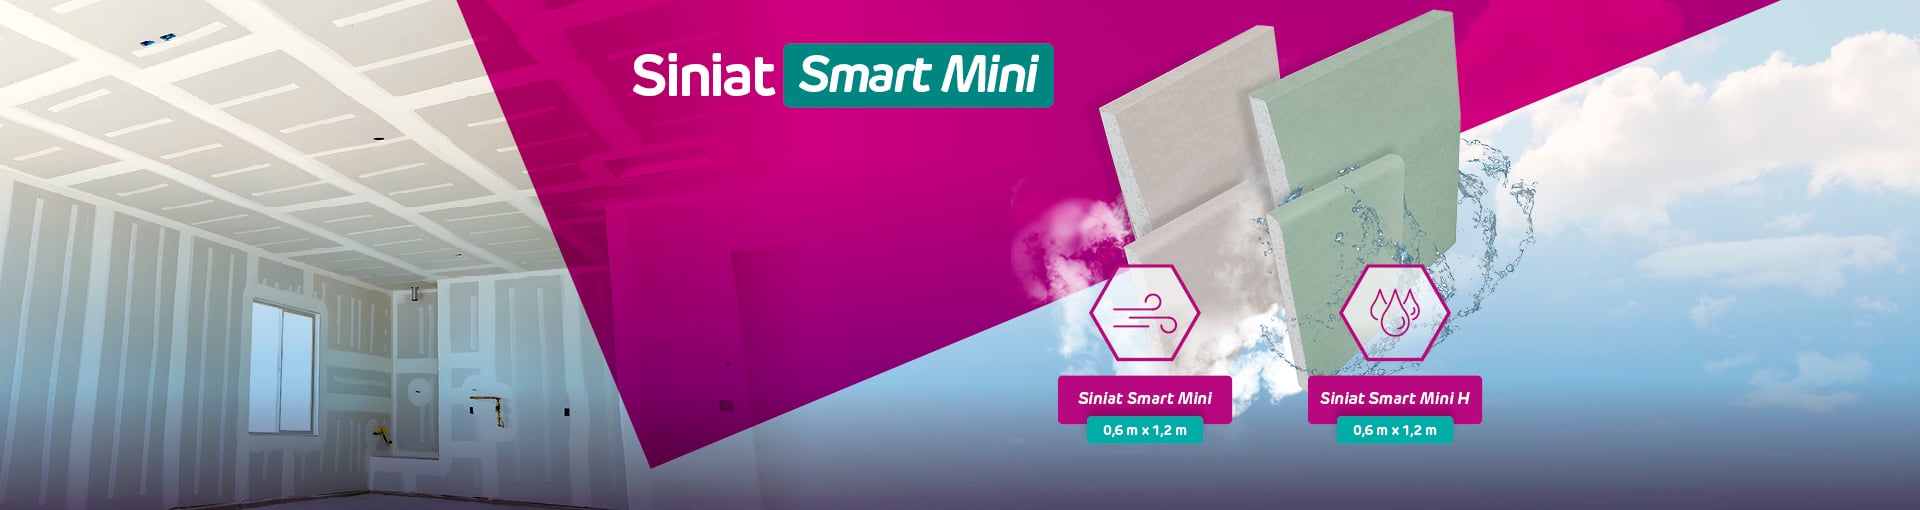 Siniat Smart Mini